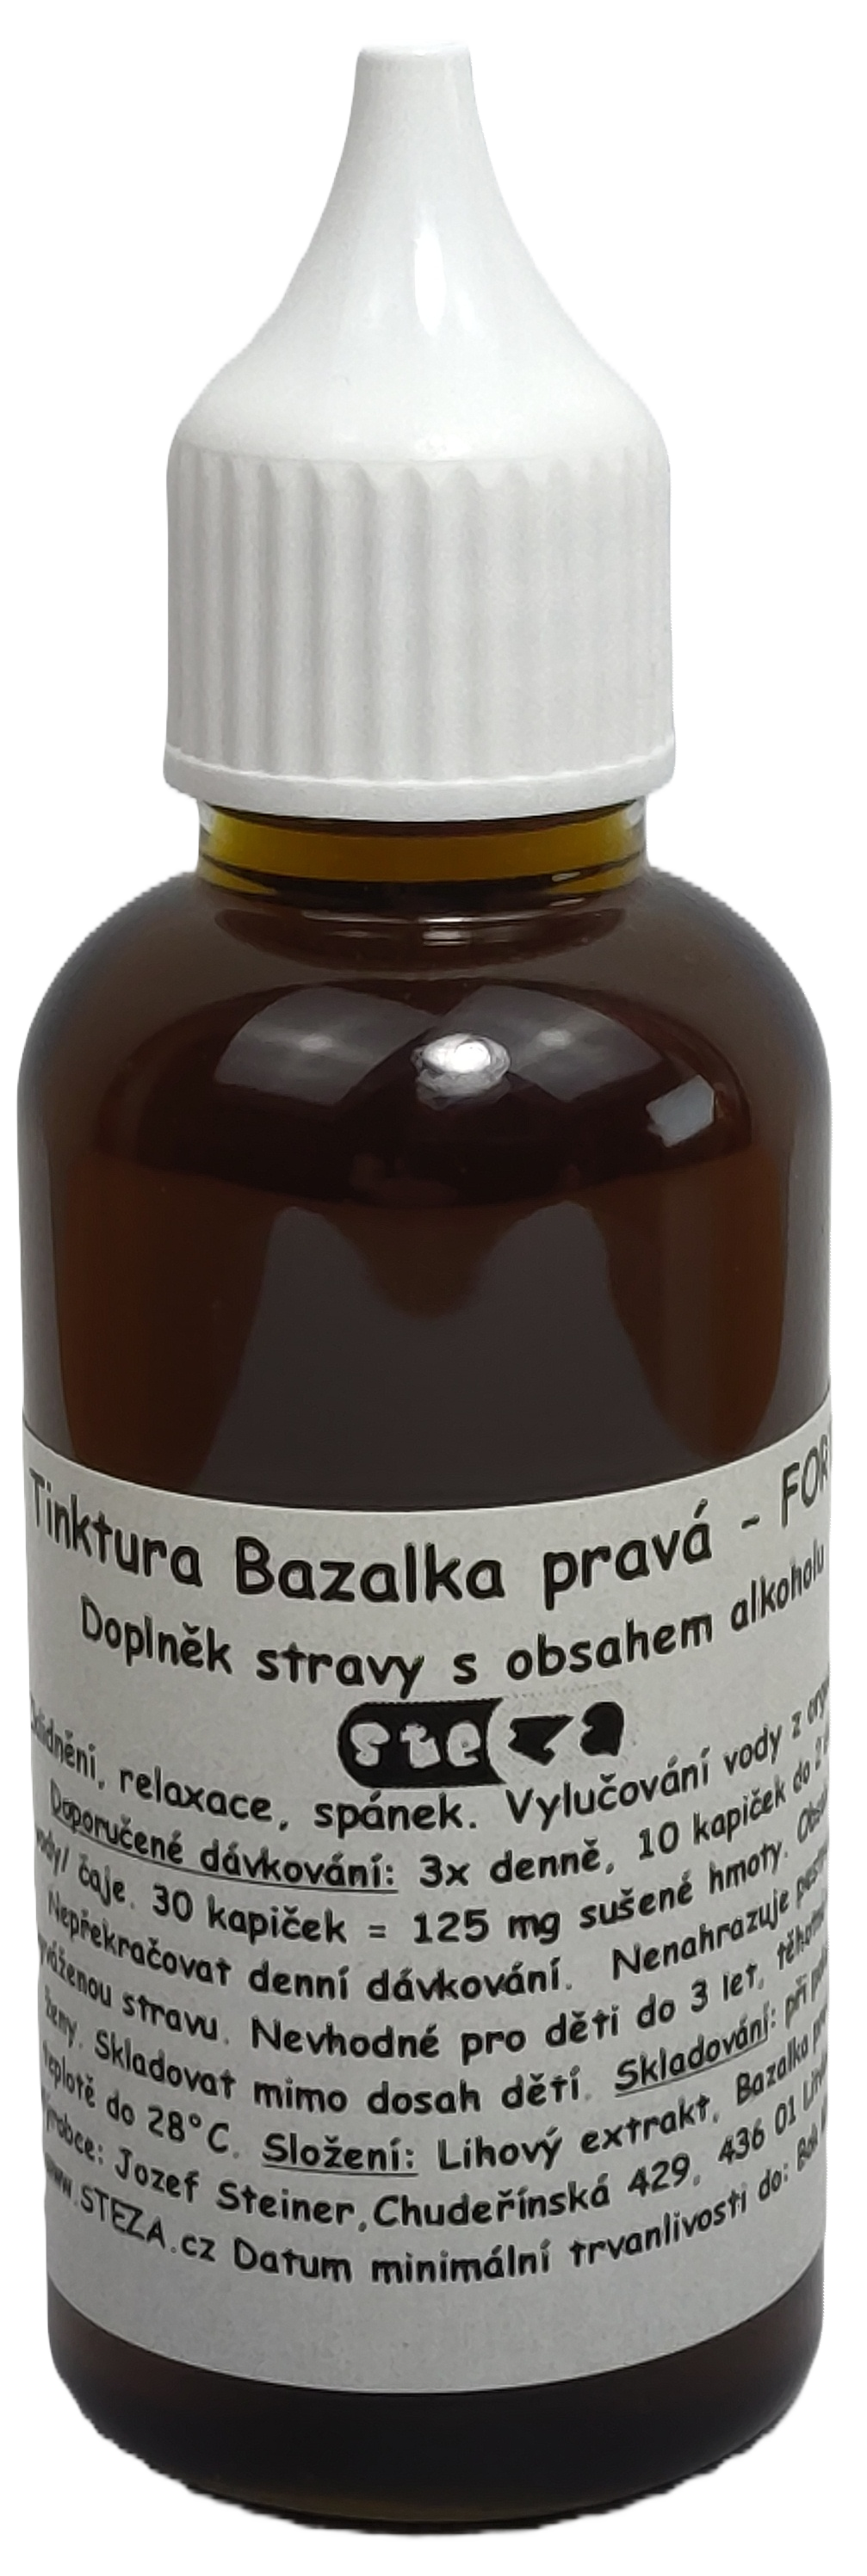 STEZA - Tinktura Bazalka pravá - FORTE 50 ml. (Bazalková tinktura)